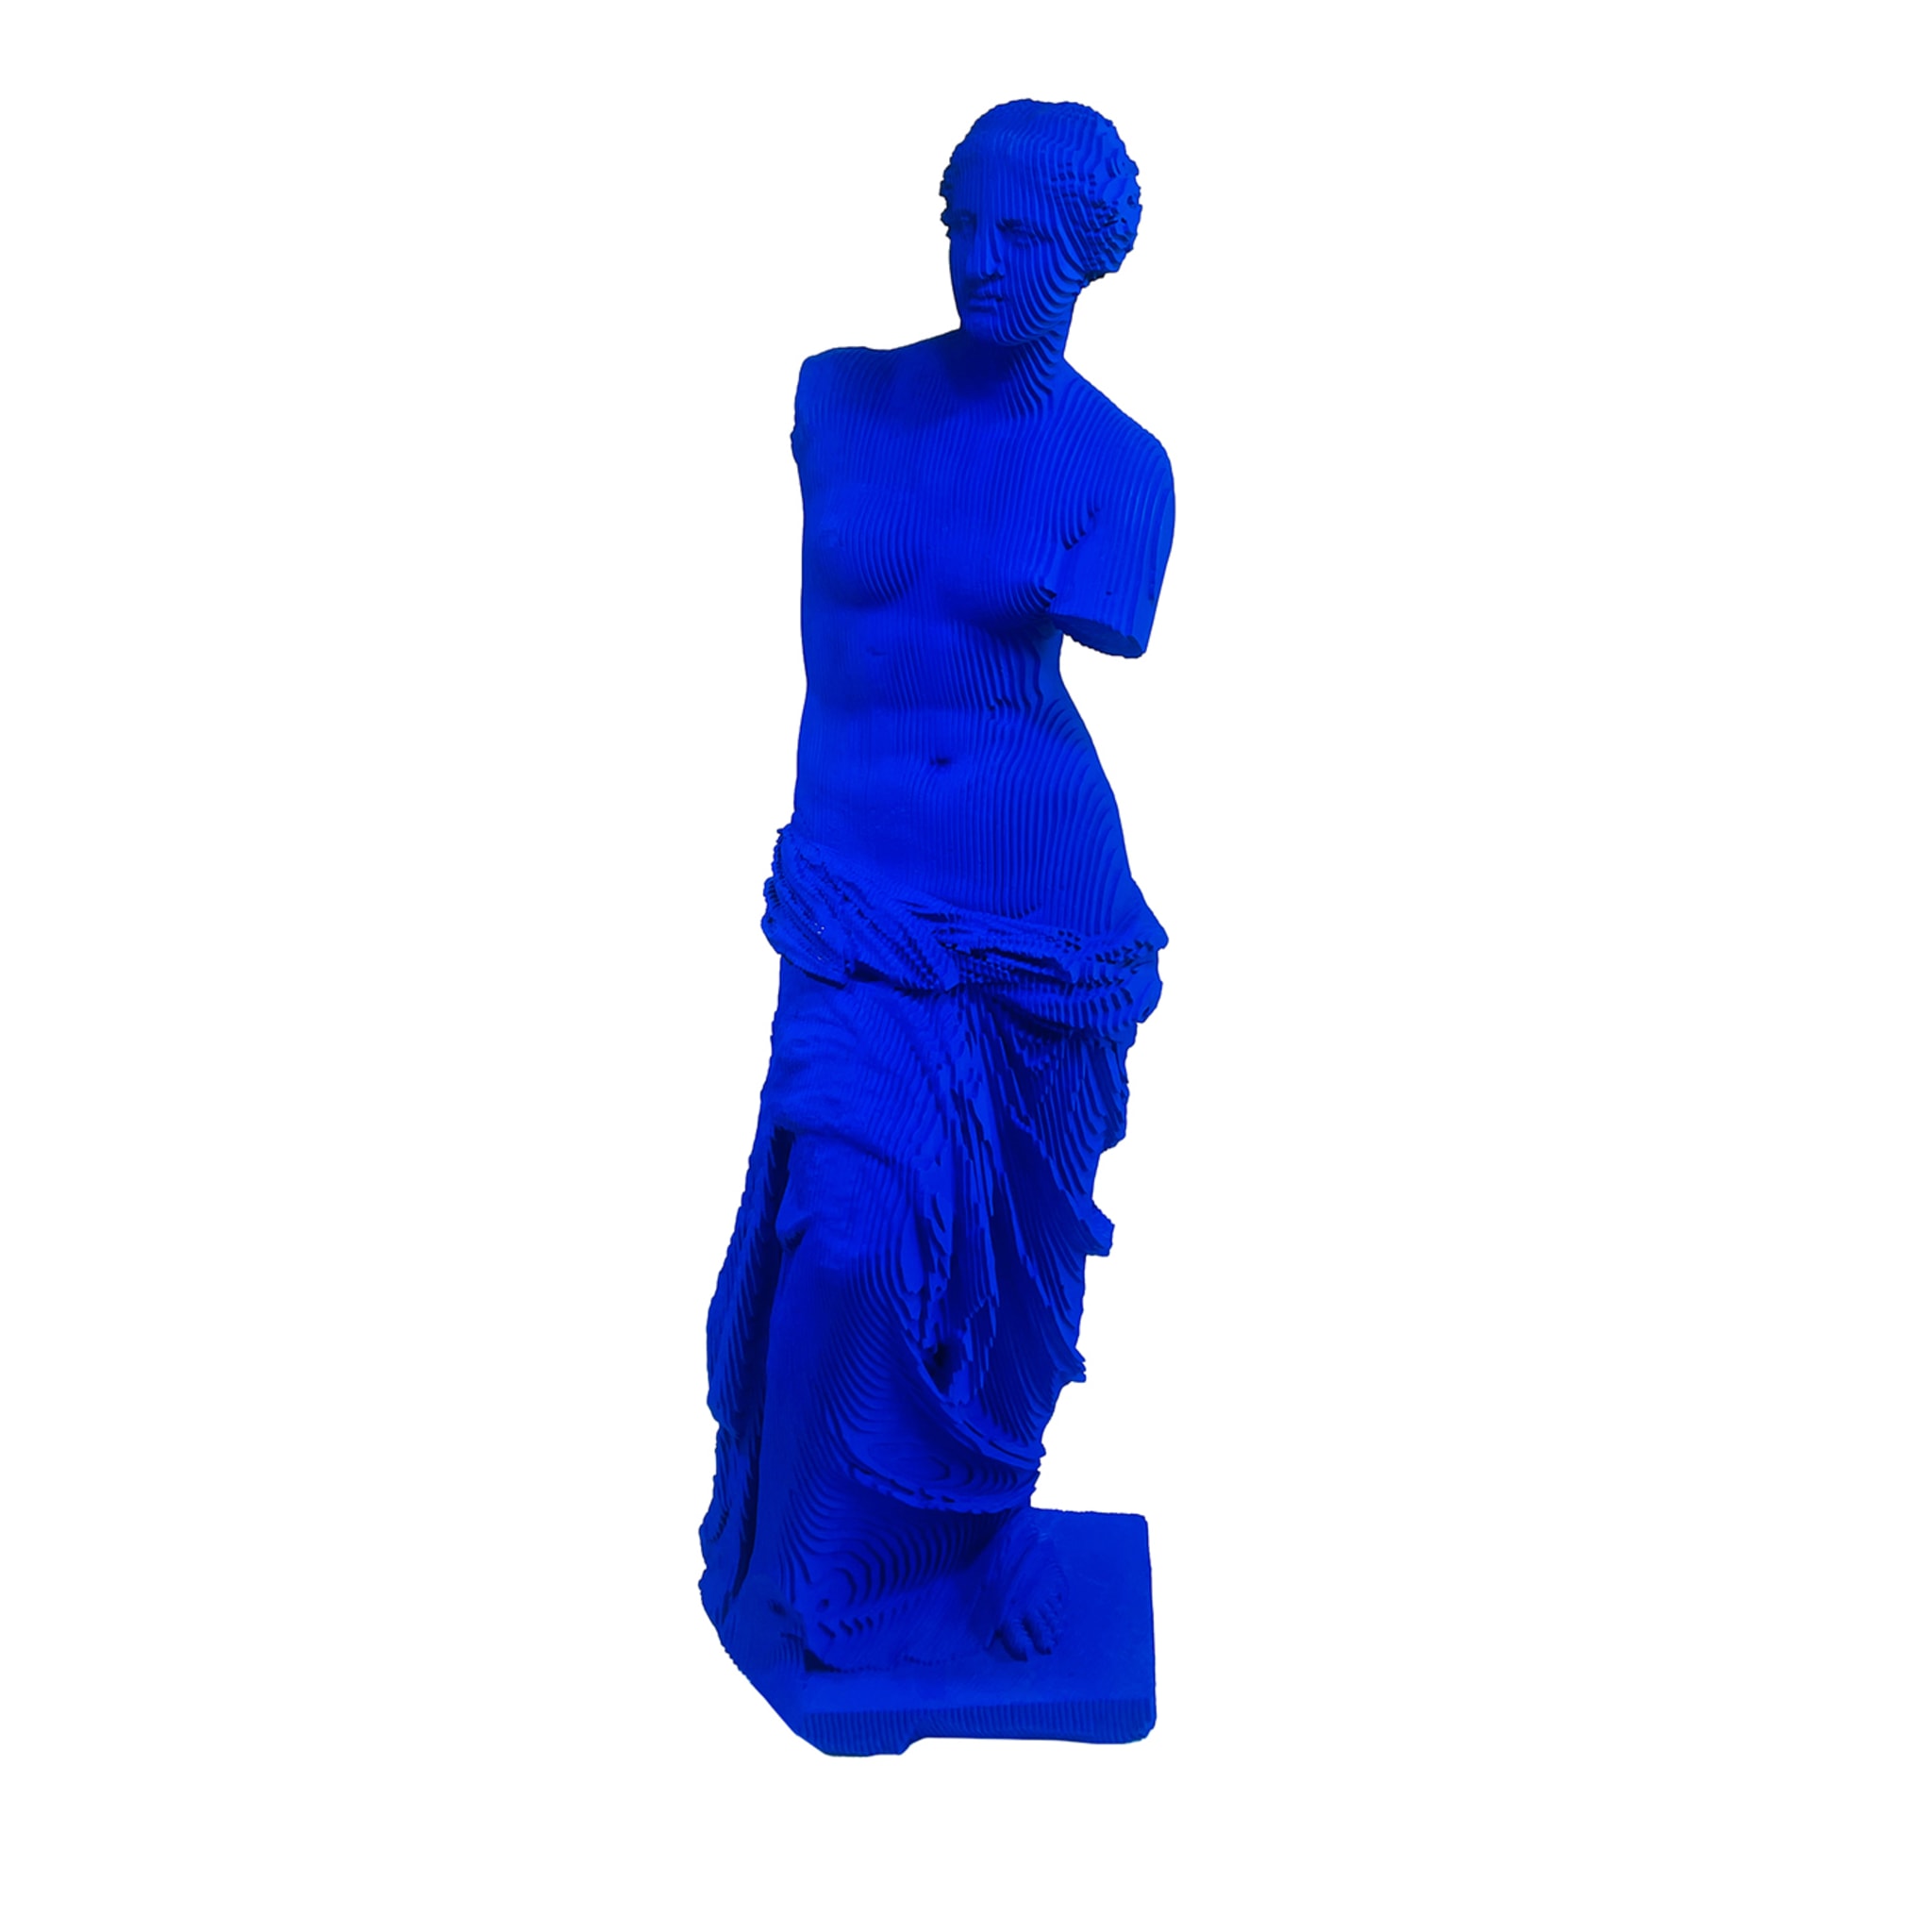 Venus Milo Blue Sculpture - Main view